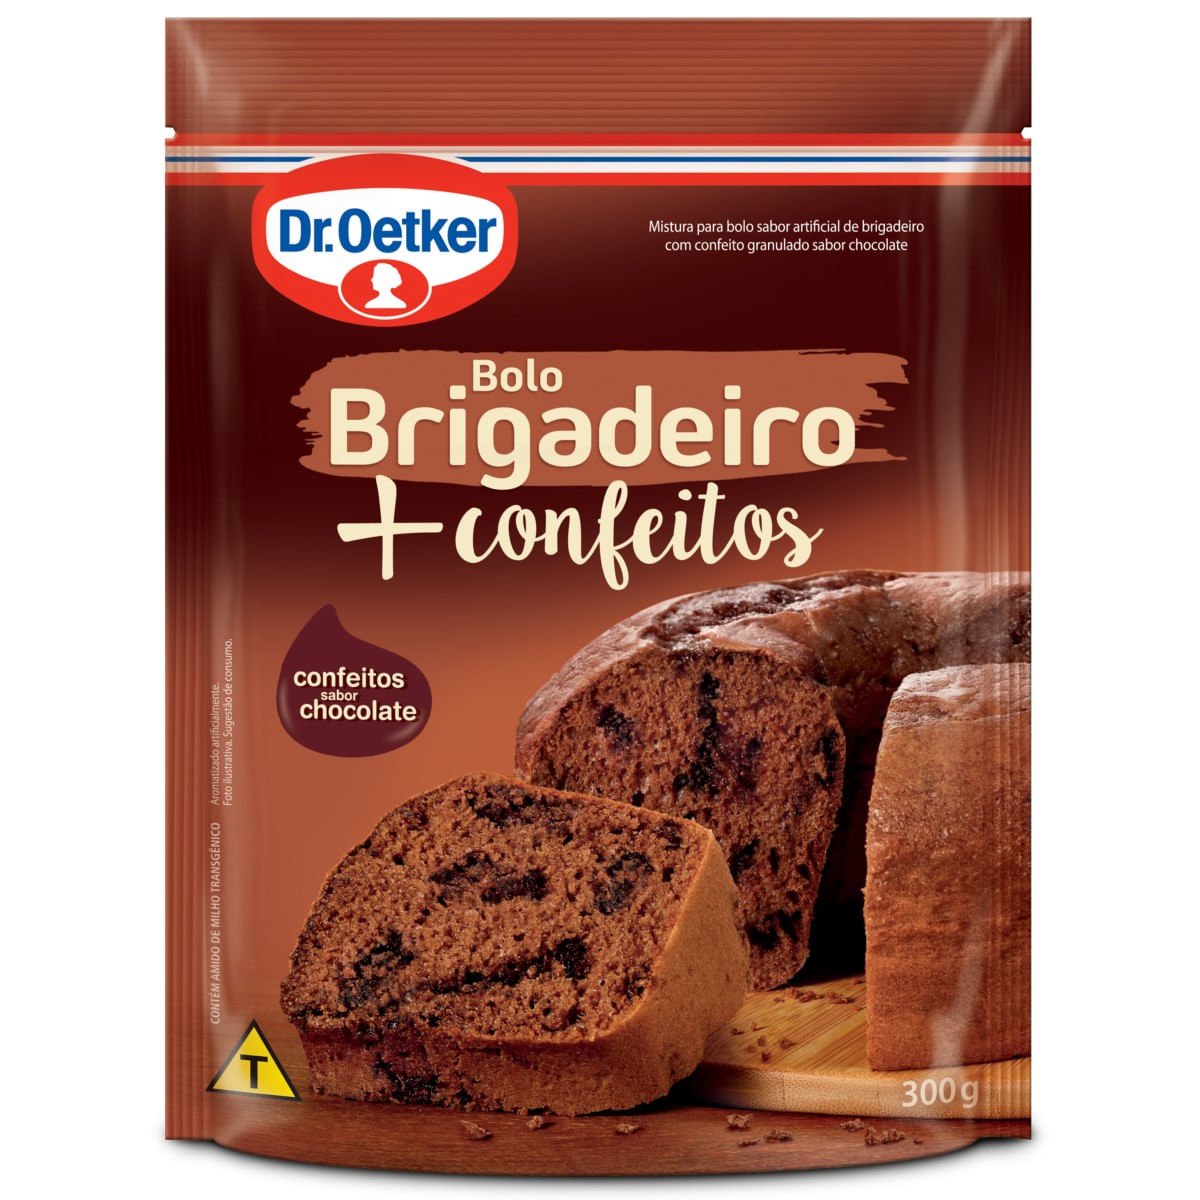 mistura-para-bolo-brigadeiro-+-confeitos-dr.-oetker-300-g-1.jpg